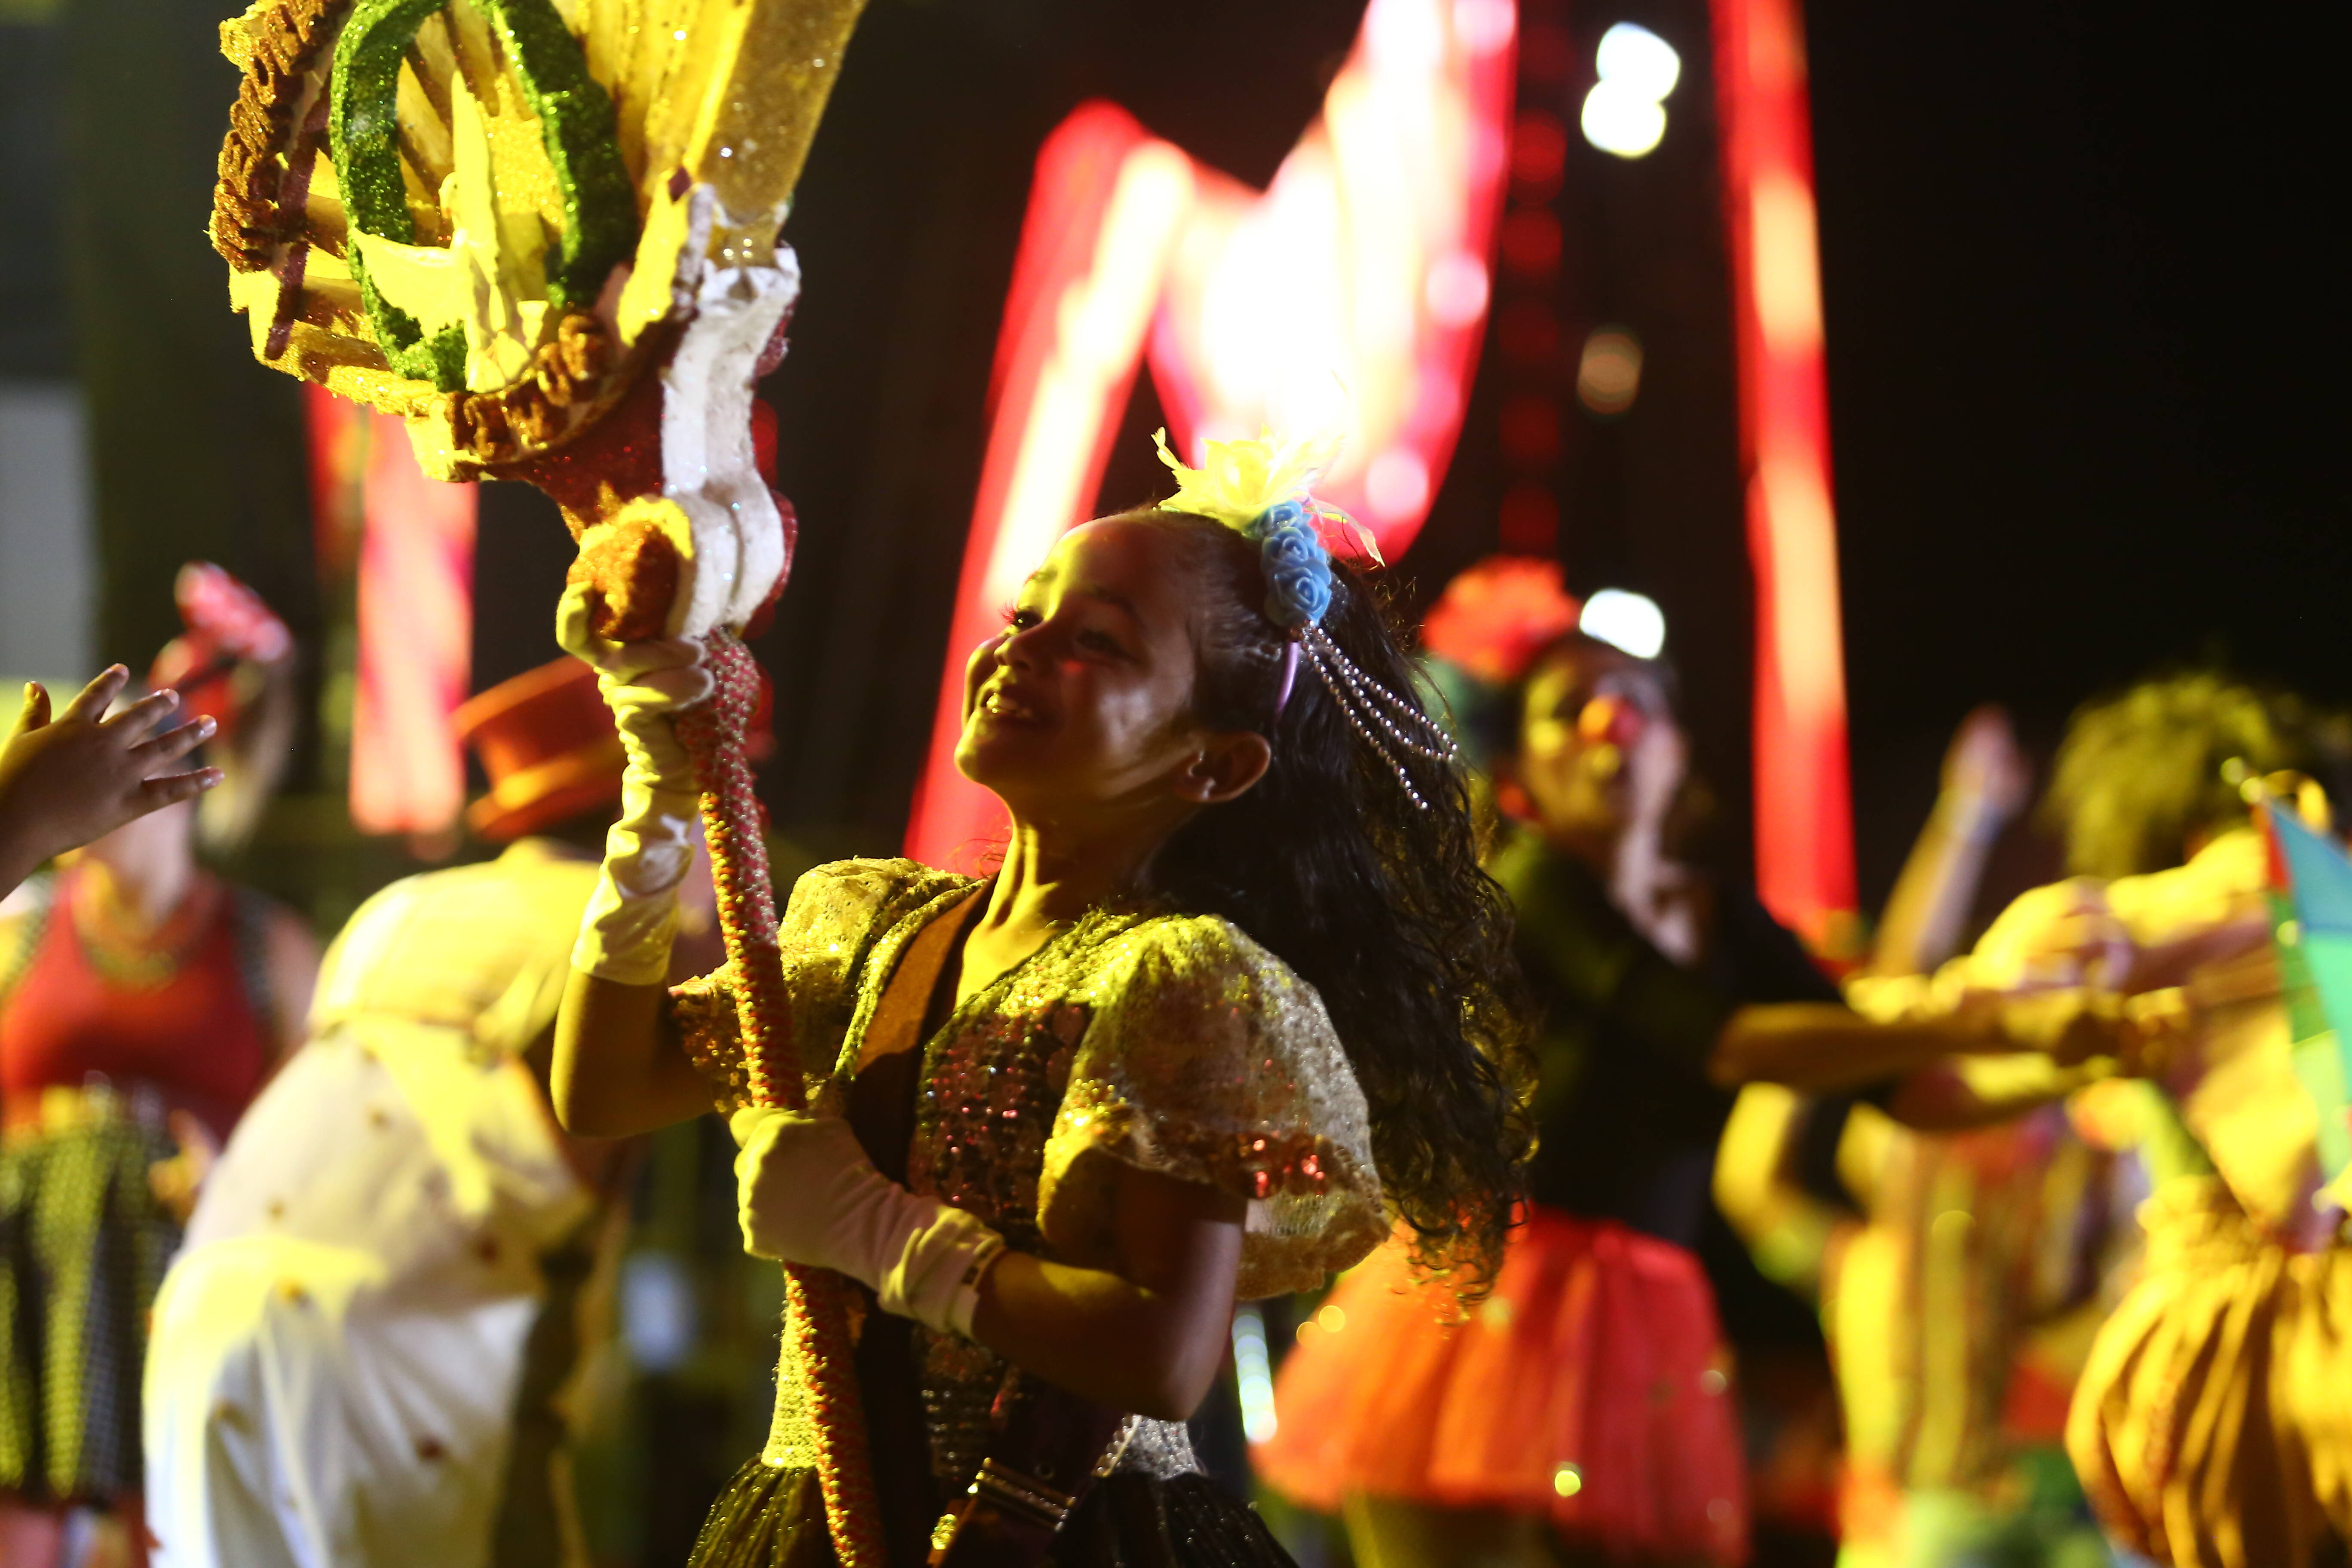 Abertura do Carnaval do Marco Zero do Recife. Foto: Divulgação/Prefeitura do Recife